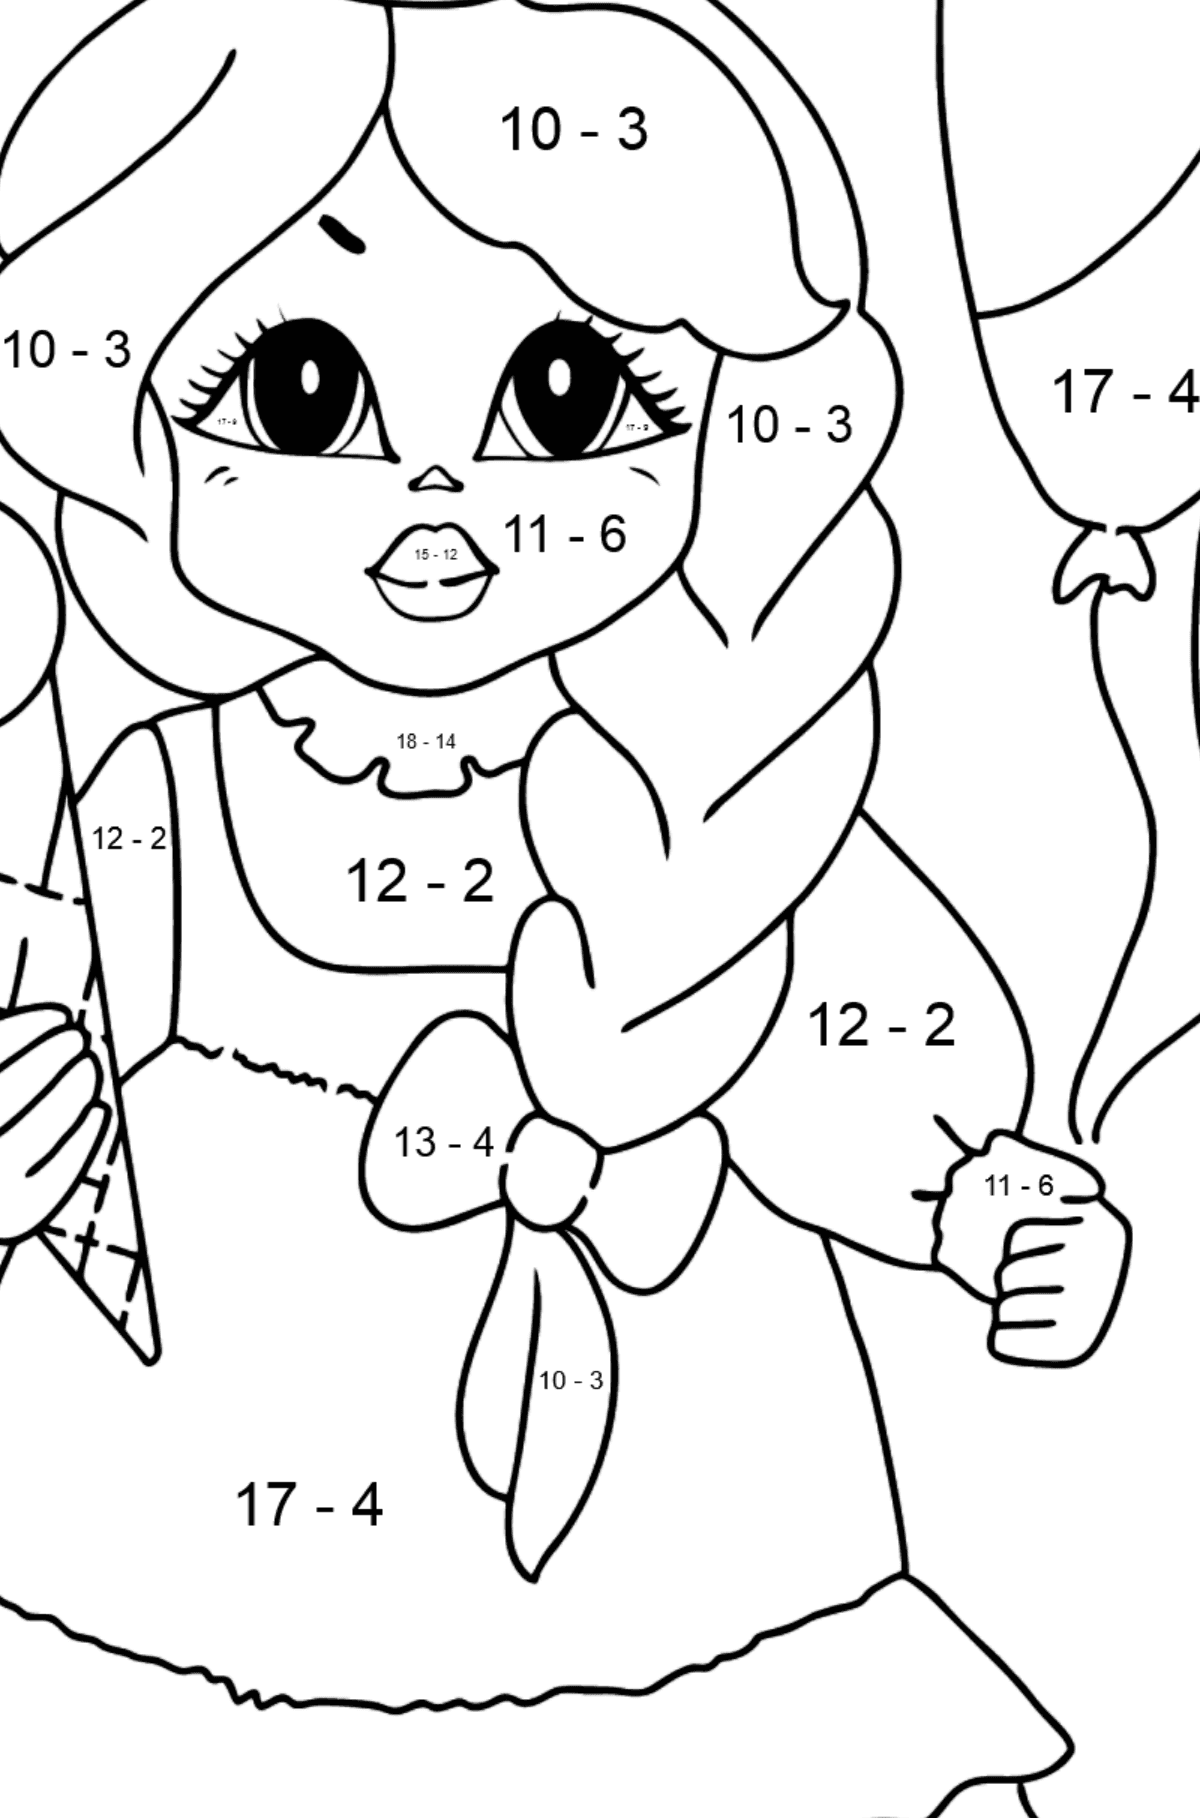 Ausmalbild - Eine Prinzessin mit Eiscreme - Mathe Ausmalbilder - Subtraktion für Kinder